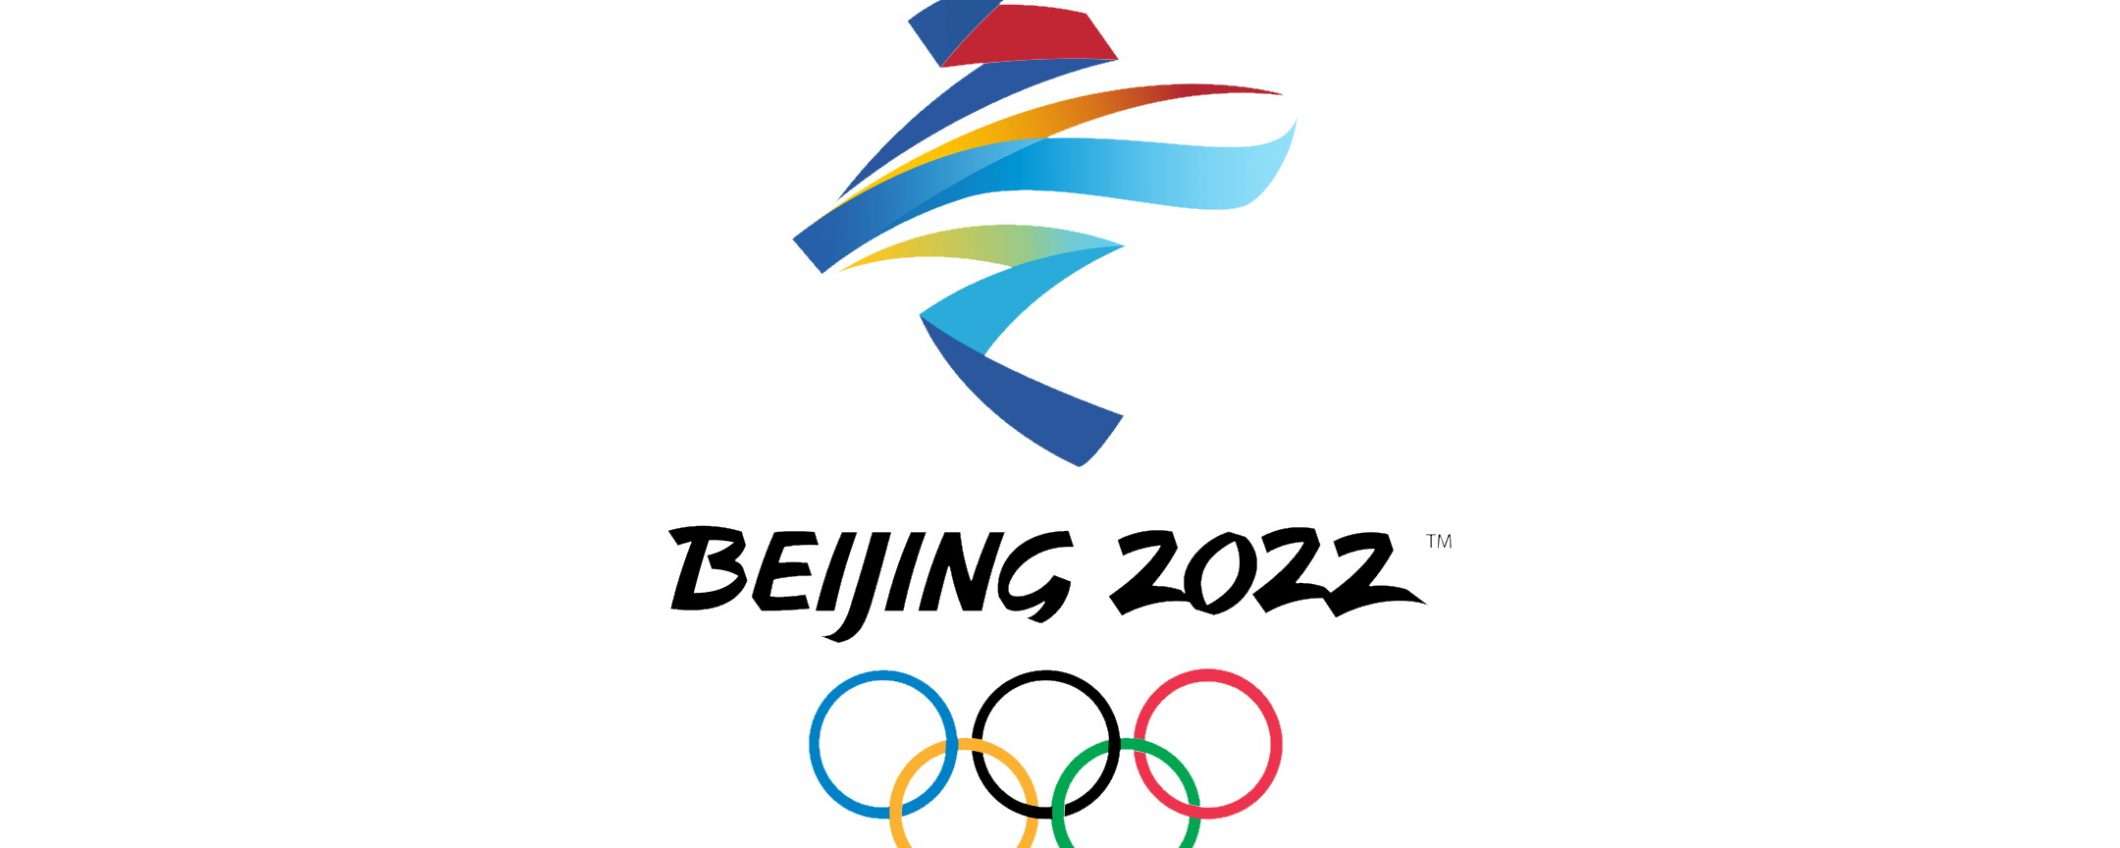 Olimpiadi di Pechino 2022: come vederle in streaming?